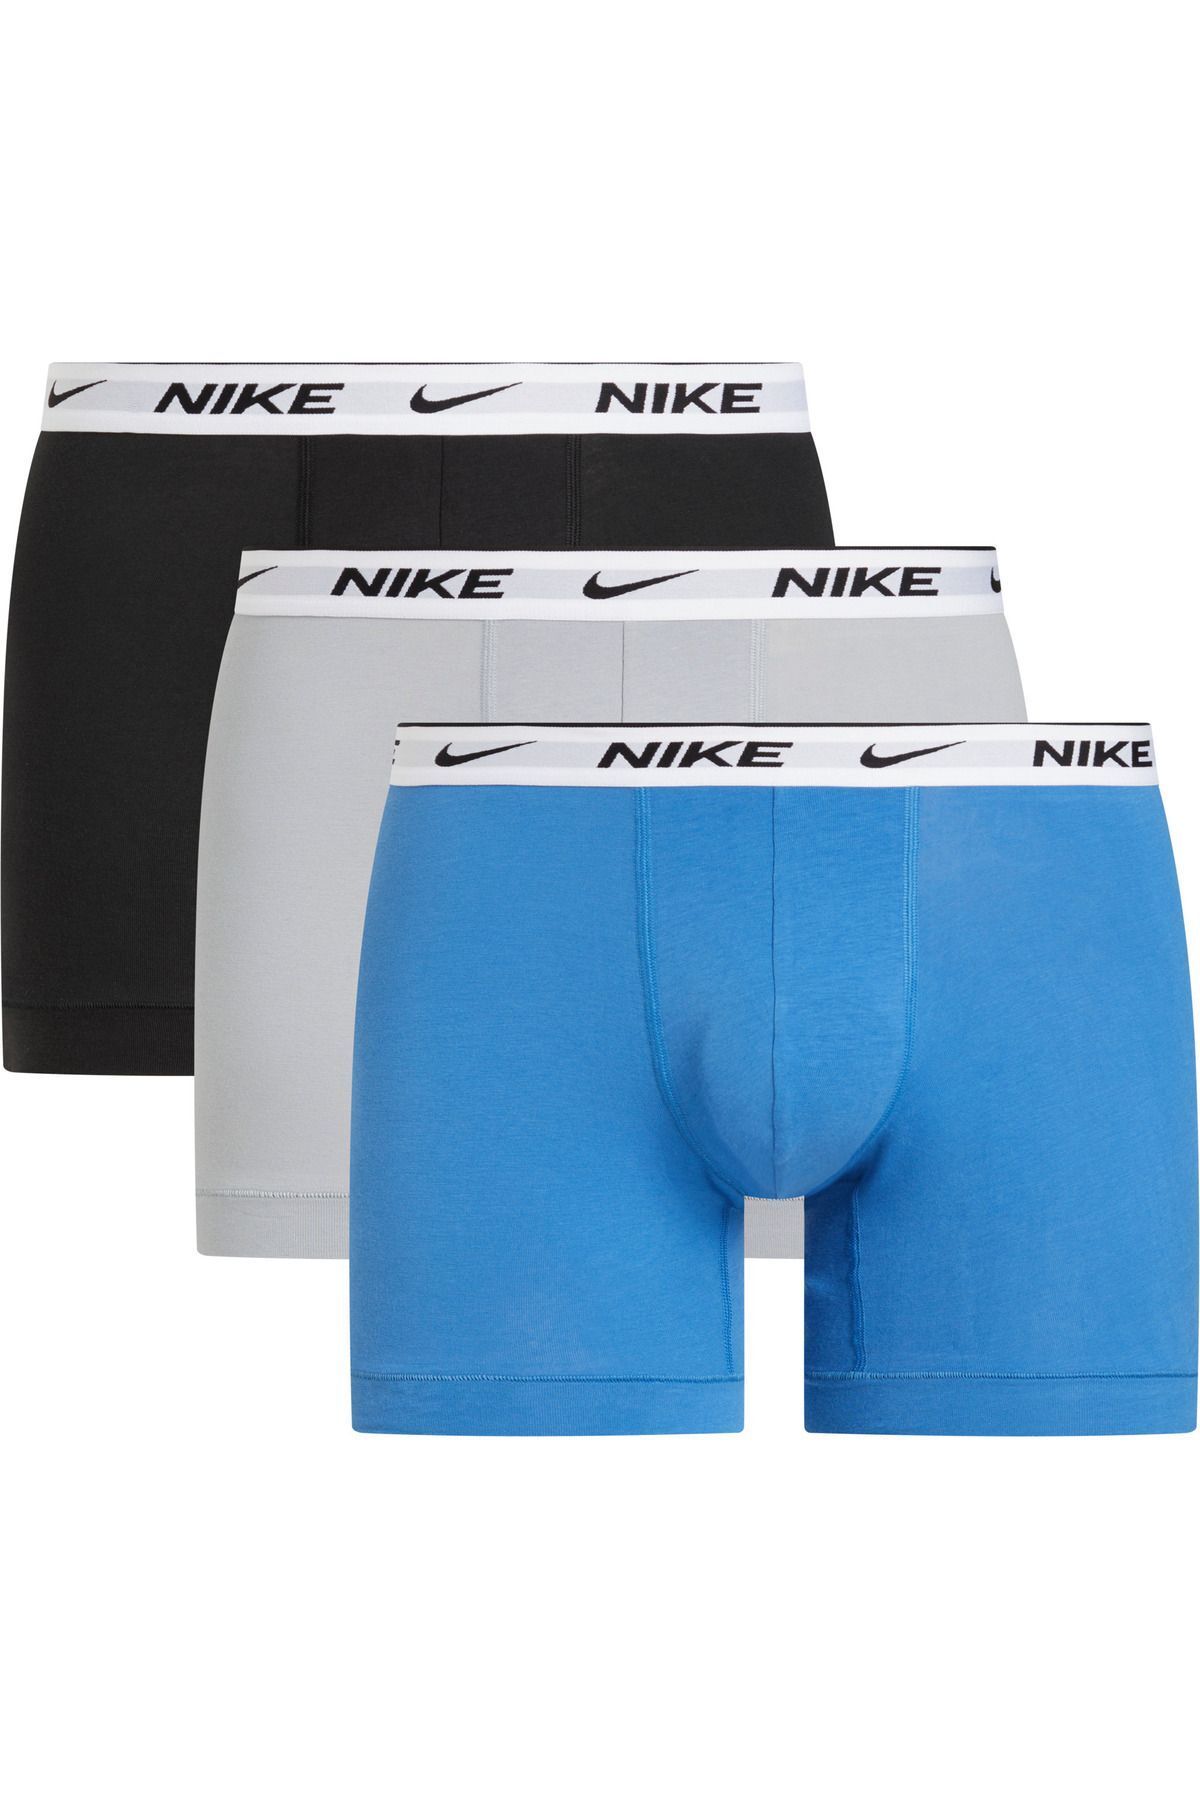 Nike Erkek Nike Marka Logolu Elastik Bantlı Günlük Kullanıma Uygun Mavi-Gri-Siyah Boxer 0000KE1008-F8G